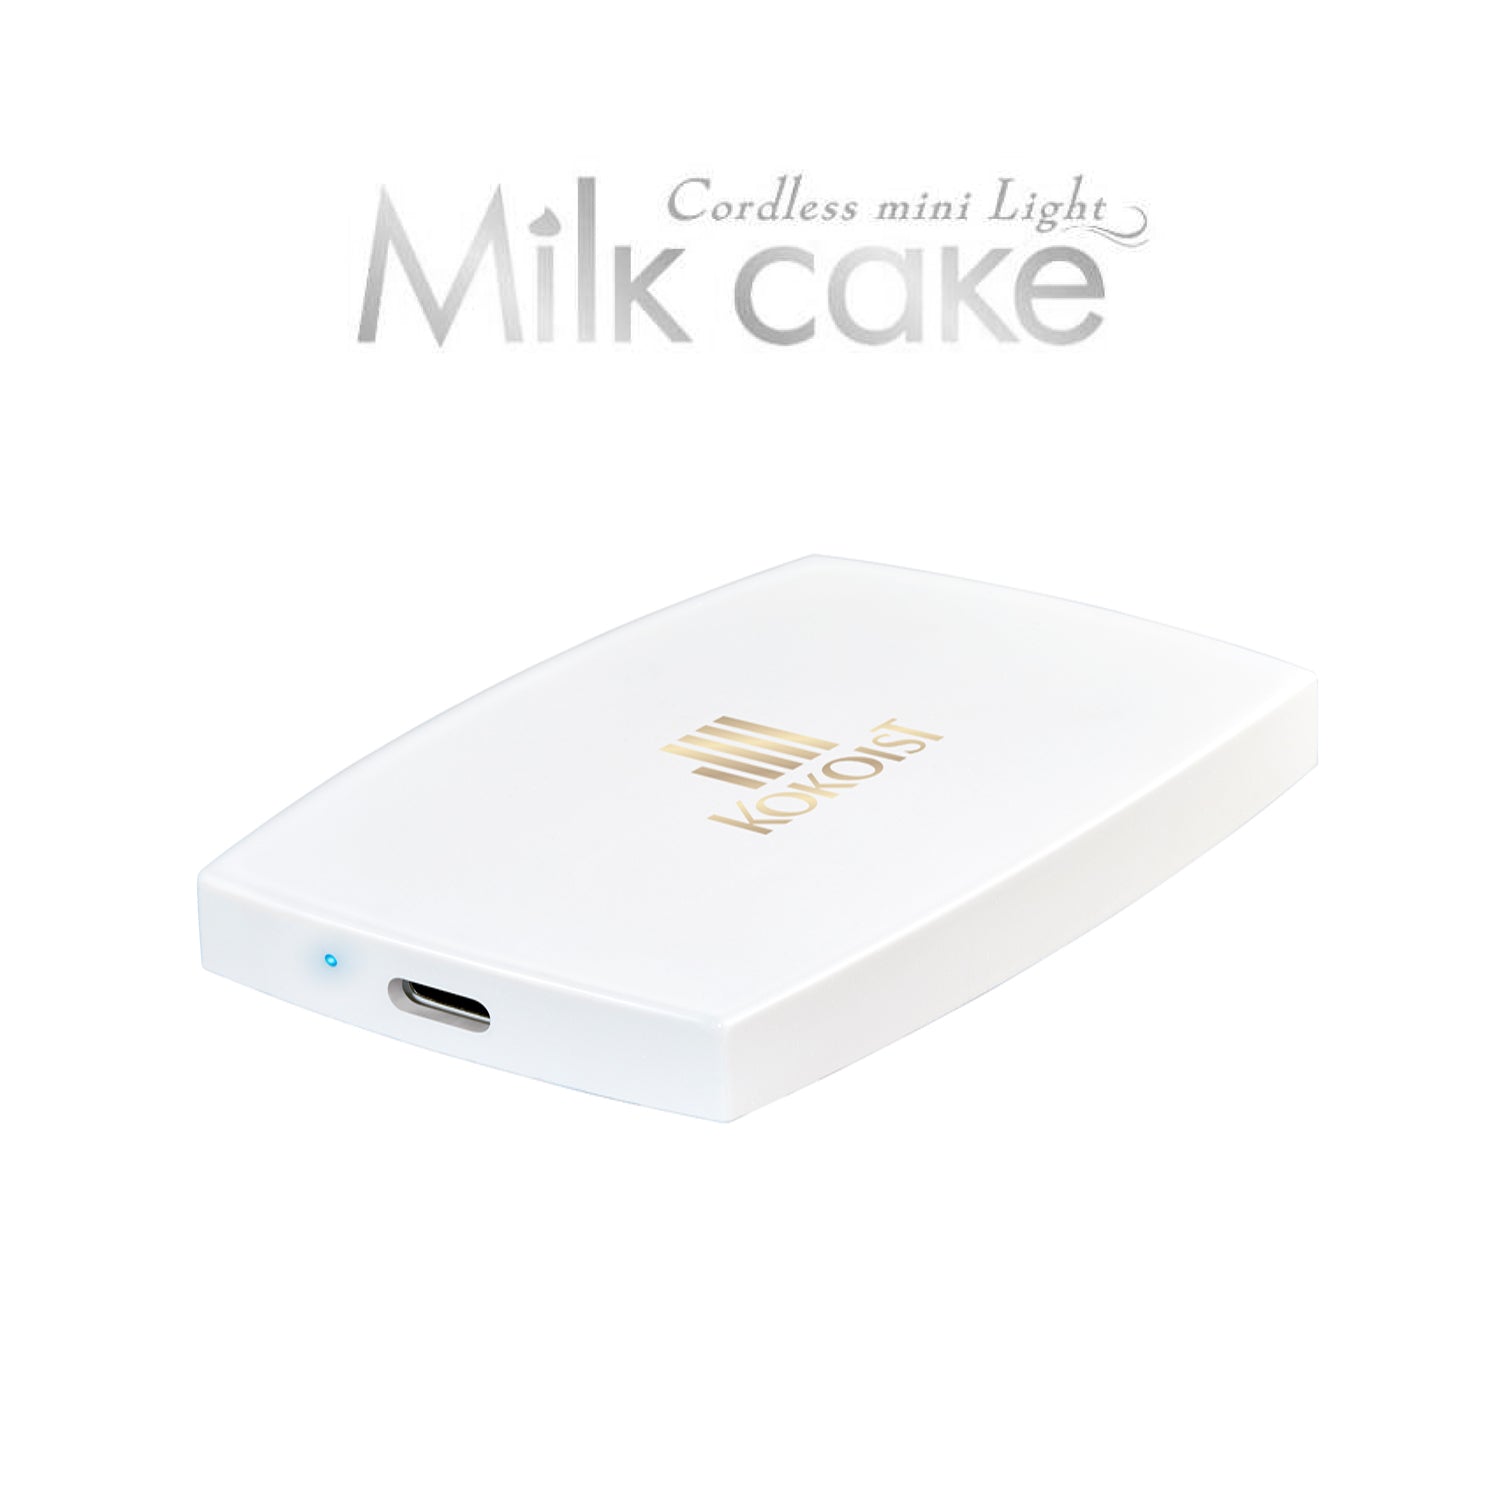 Cordless Mini Light Milk Cake | KOKOIST USA